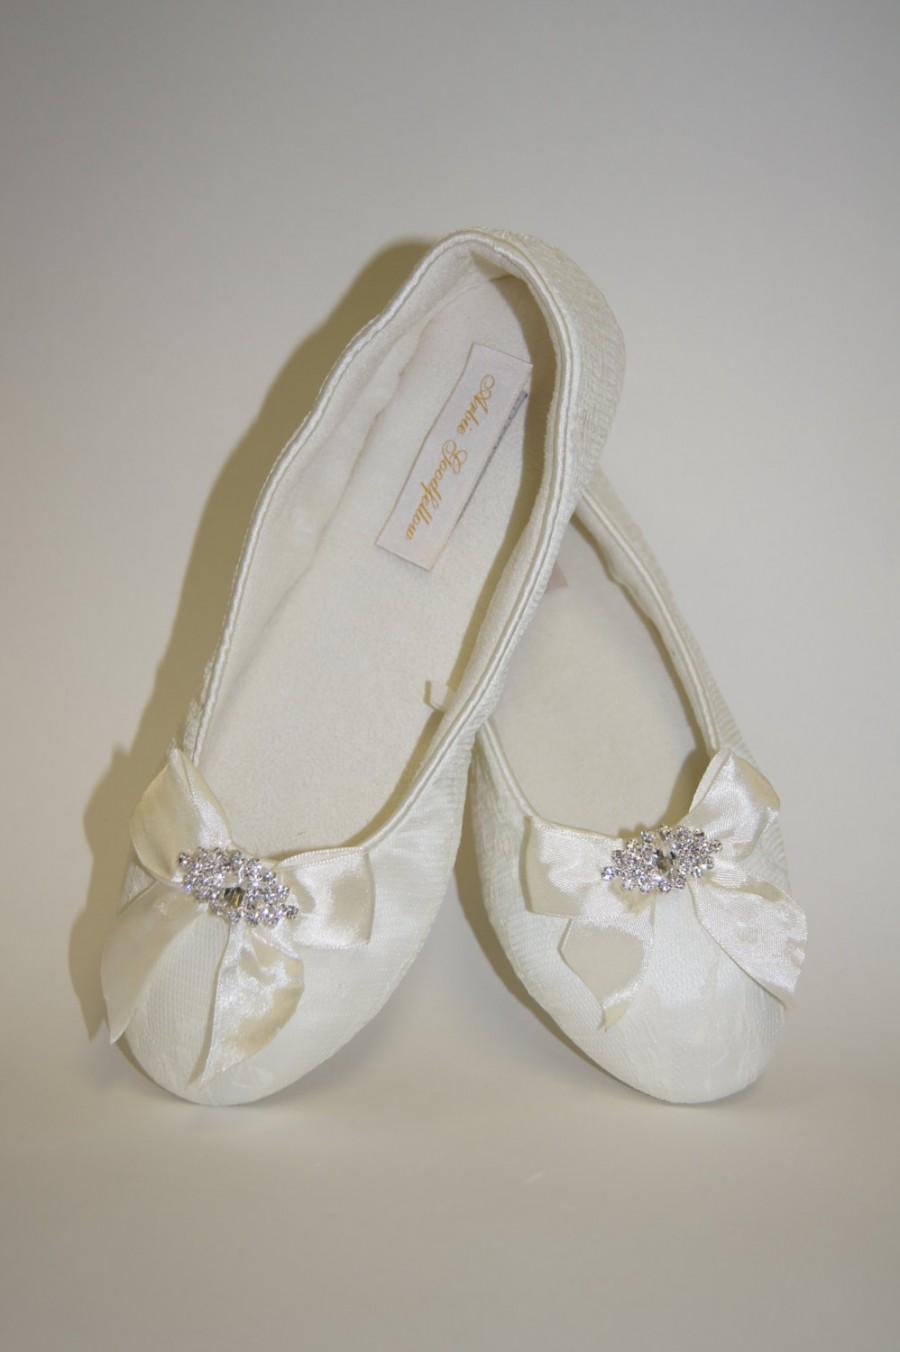 زفاف - Flat Lace Wedding Shoes - Choose From White Or Ivory Lace Flat Shoes - Ribbons And Crystals - Comfortable Flat Lace Wedding Shoes - Parisxox